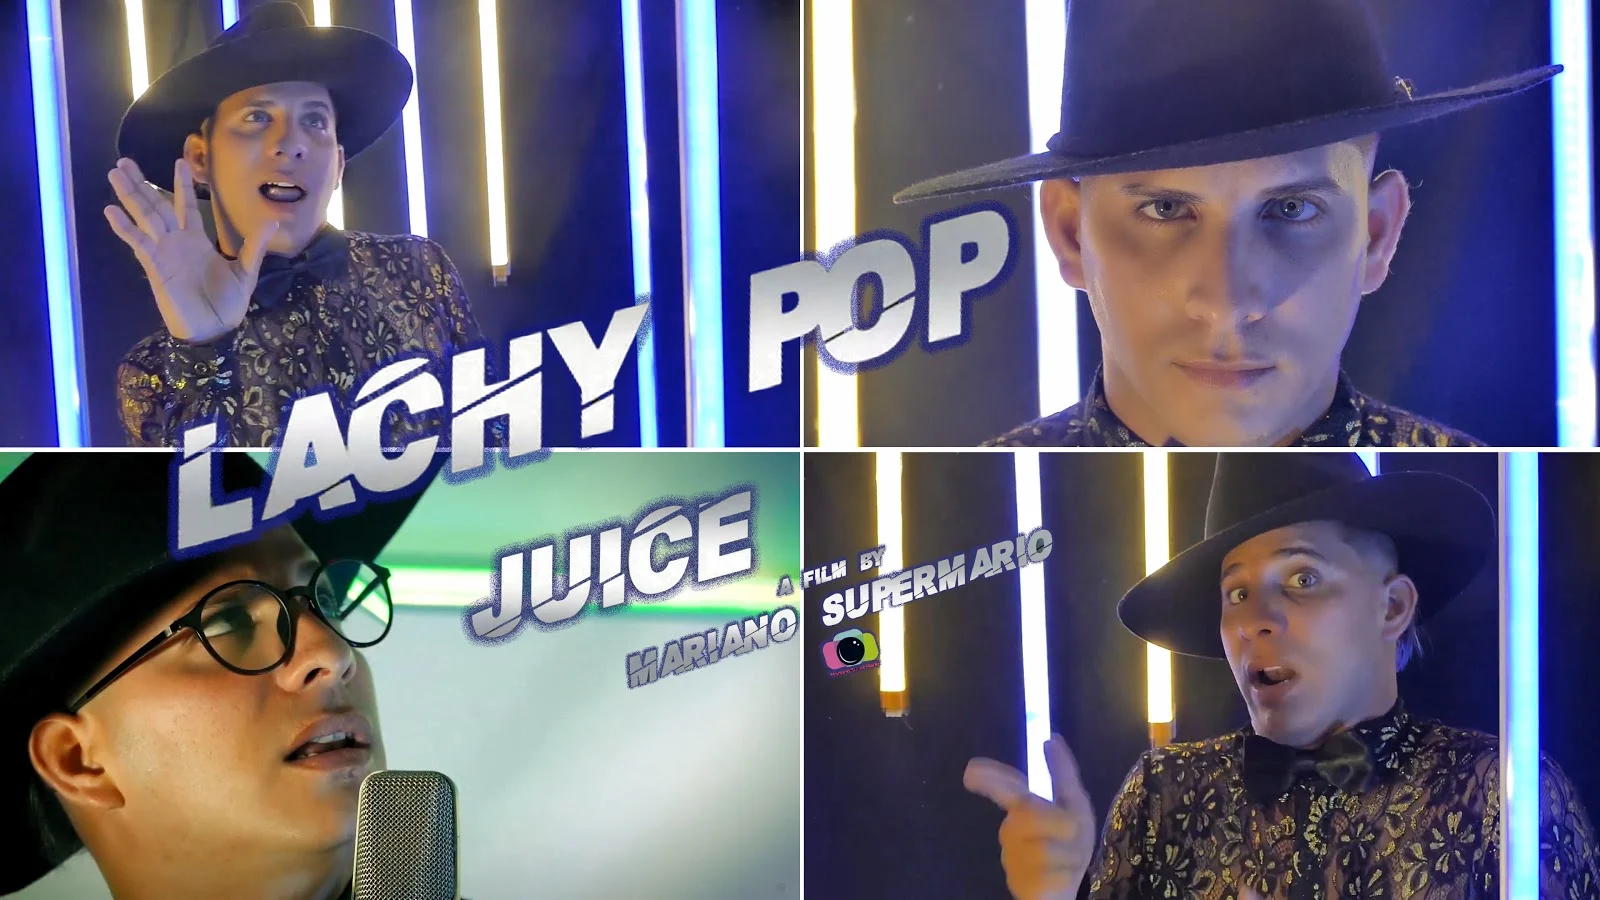 Lachy Pop - ¨Juice¨ - Videoclip - Director: Mariano SuperMario. Portal Del Vídeo Clip Cubano